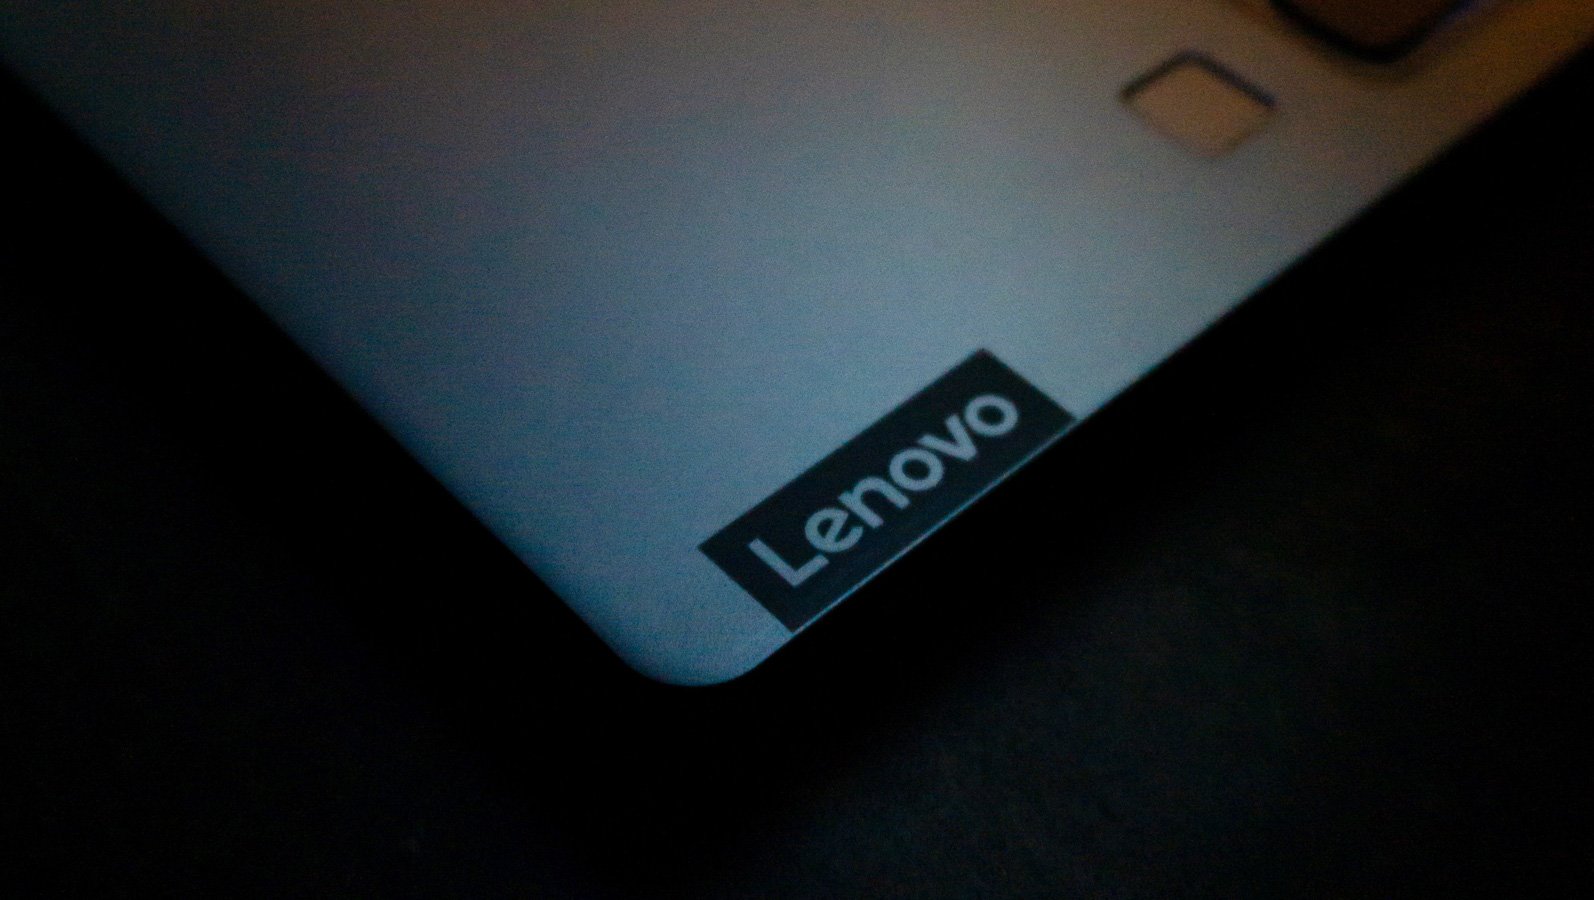 Esquina de una computadora portátil Lenovo